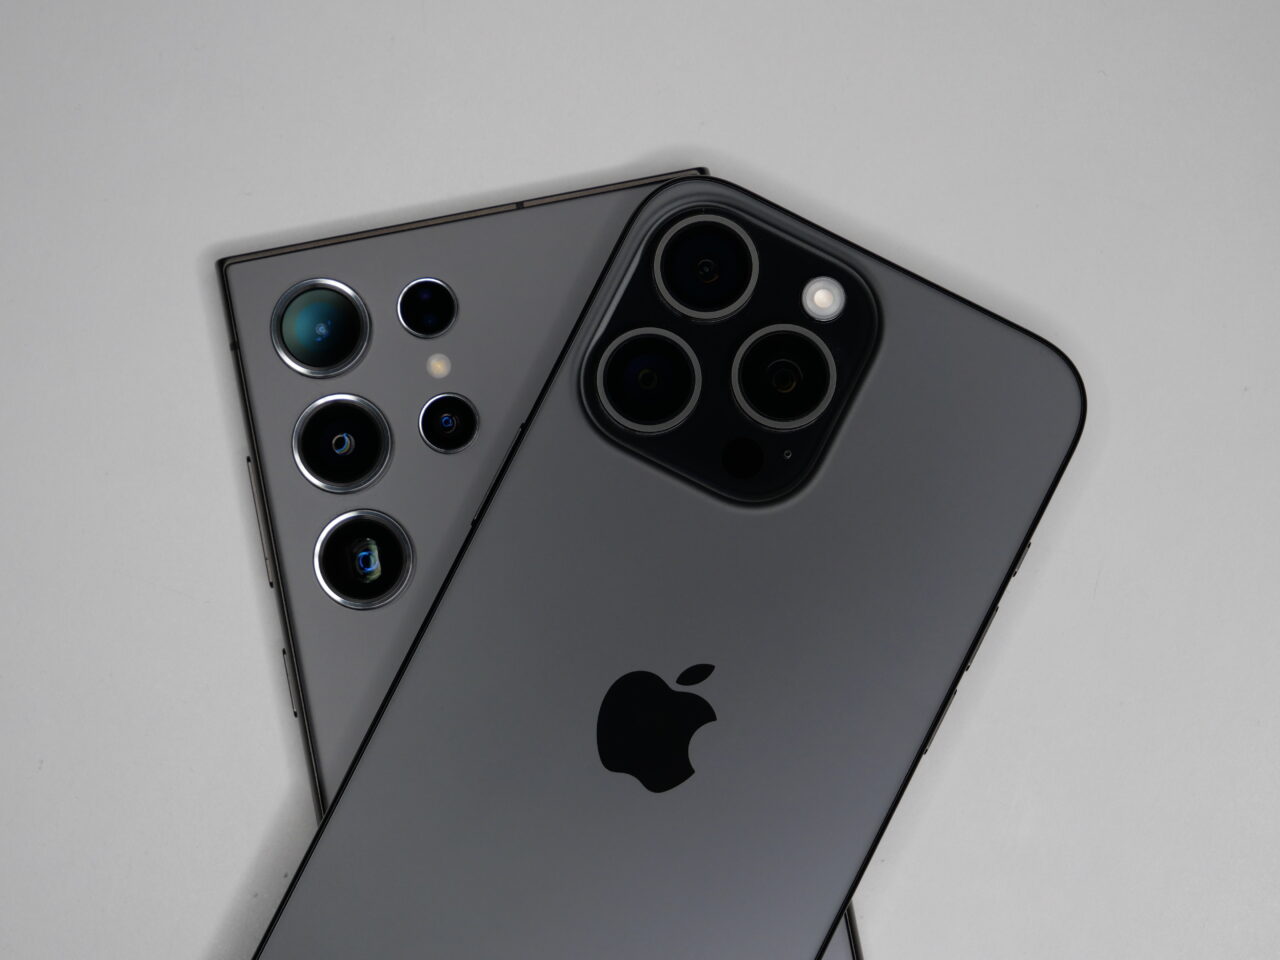 Dwa smartfony leżące na białym tle, z widocznymi tylnymi aparatami fotograficznymi i logo firmy Apple.